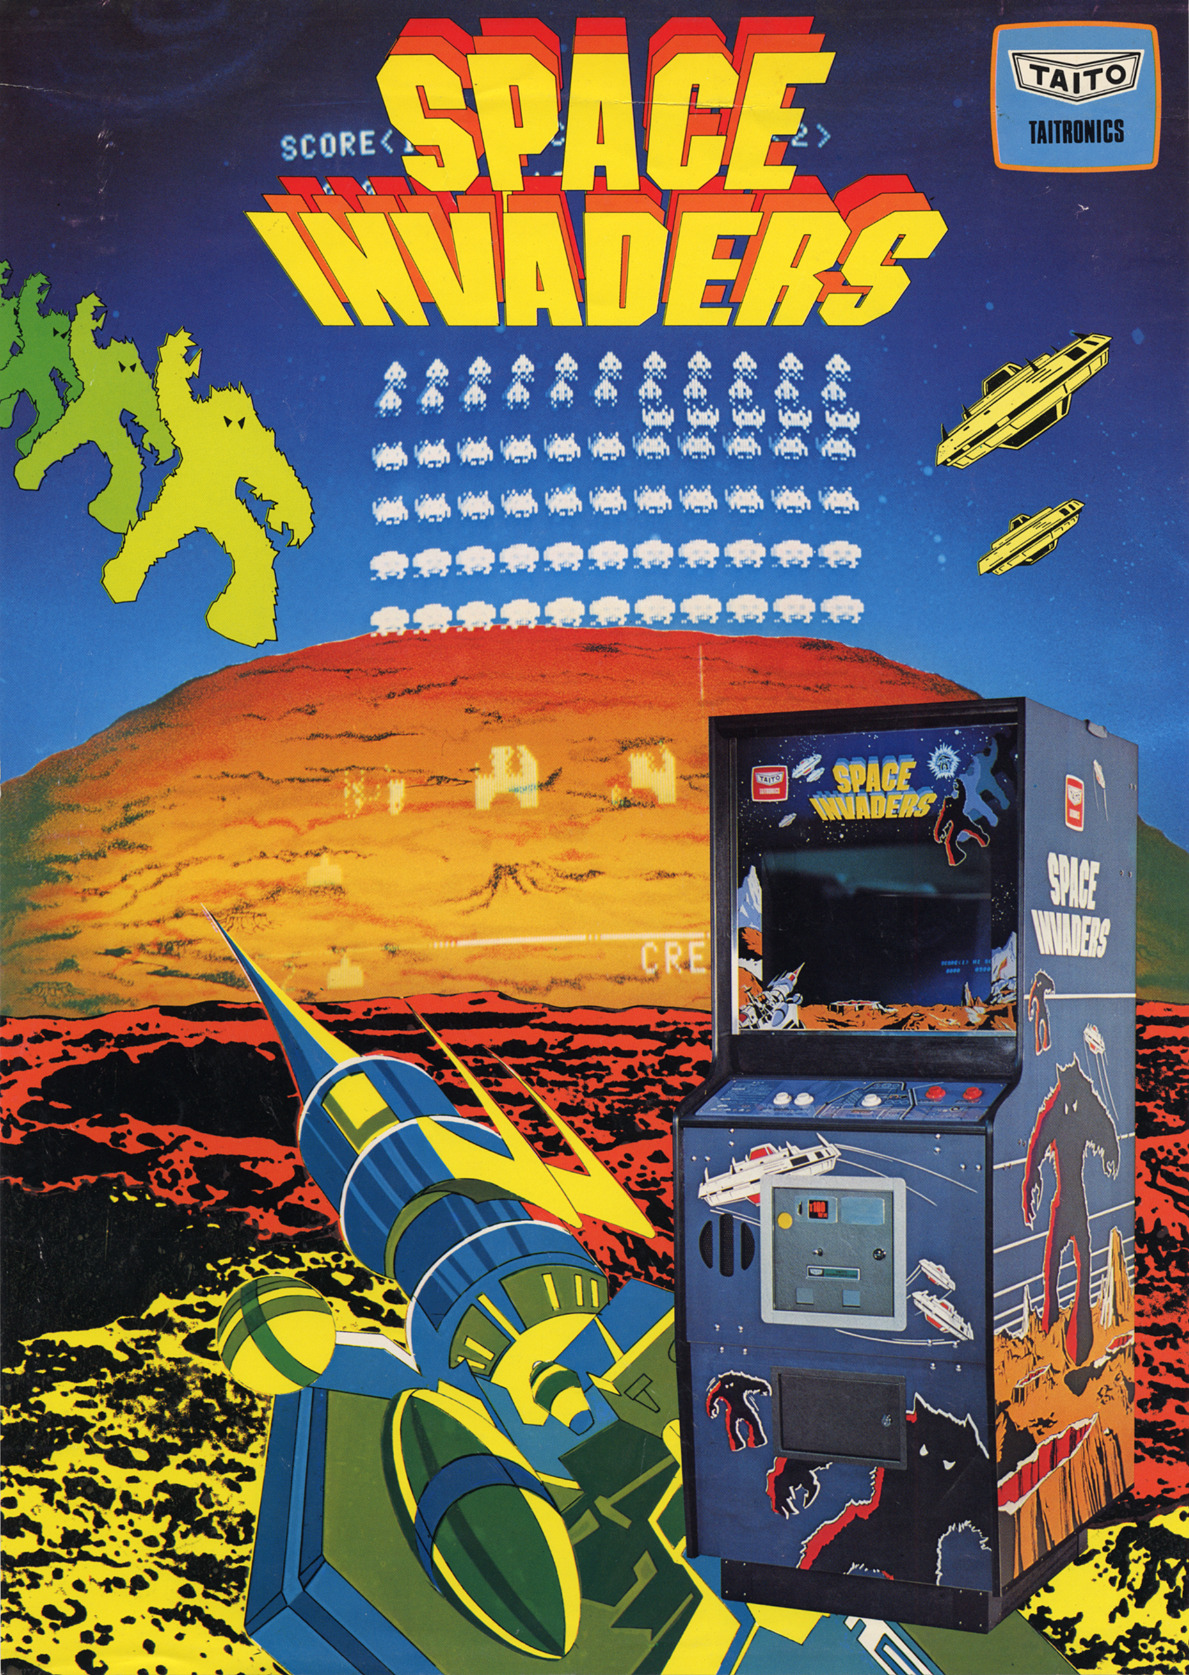 jaquette du jeu vidéo Space Invaders